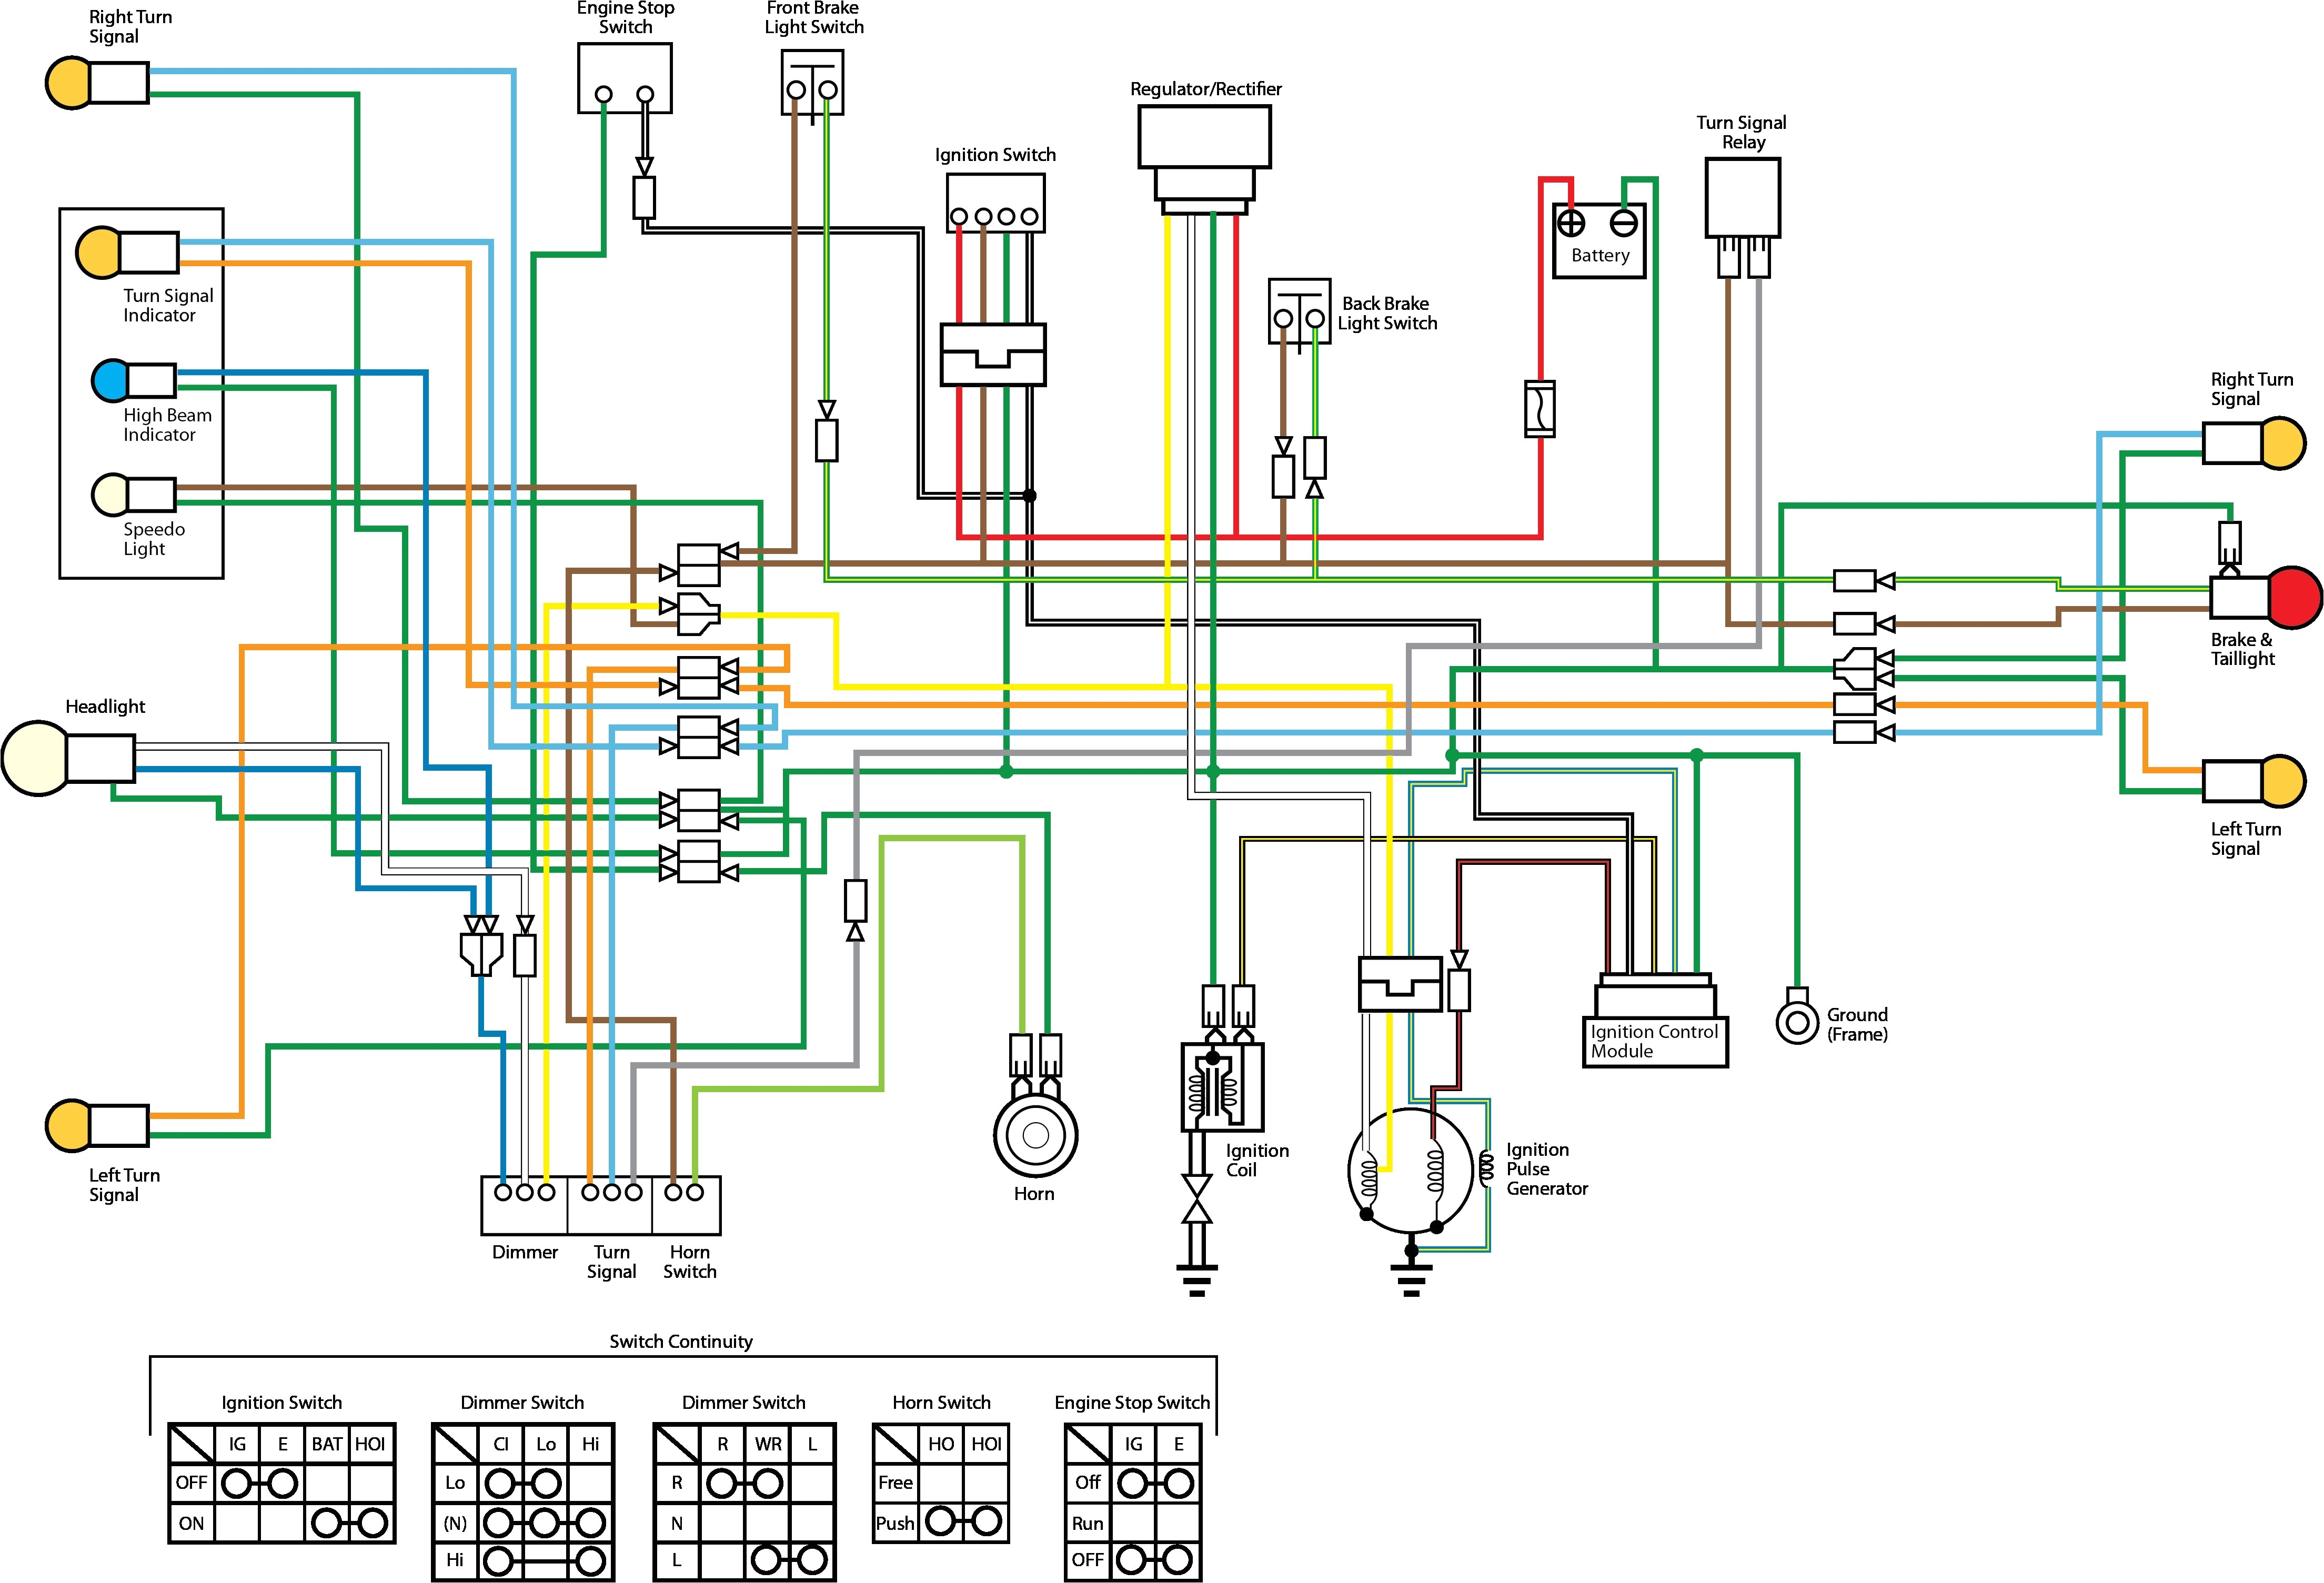 1981 kz650 wiring diagram wiring diagram new 1981 kz650 wiring diagram